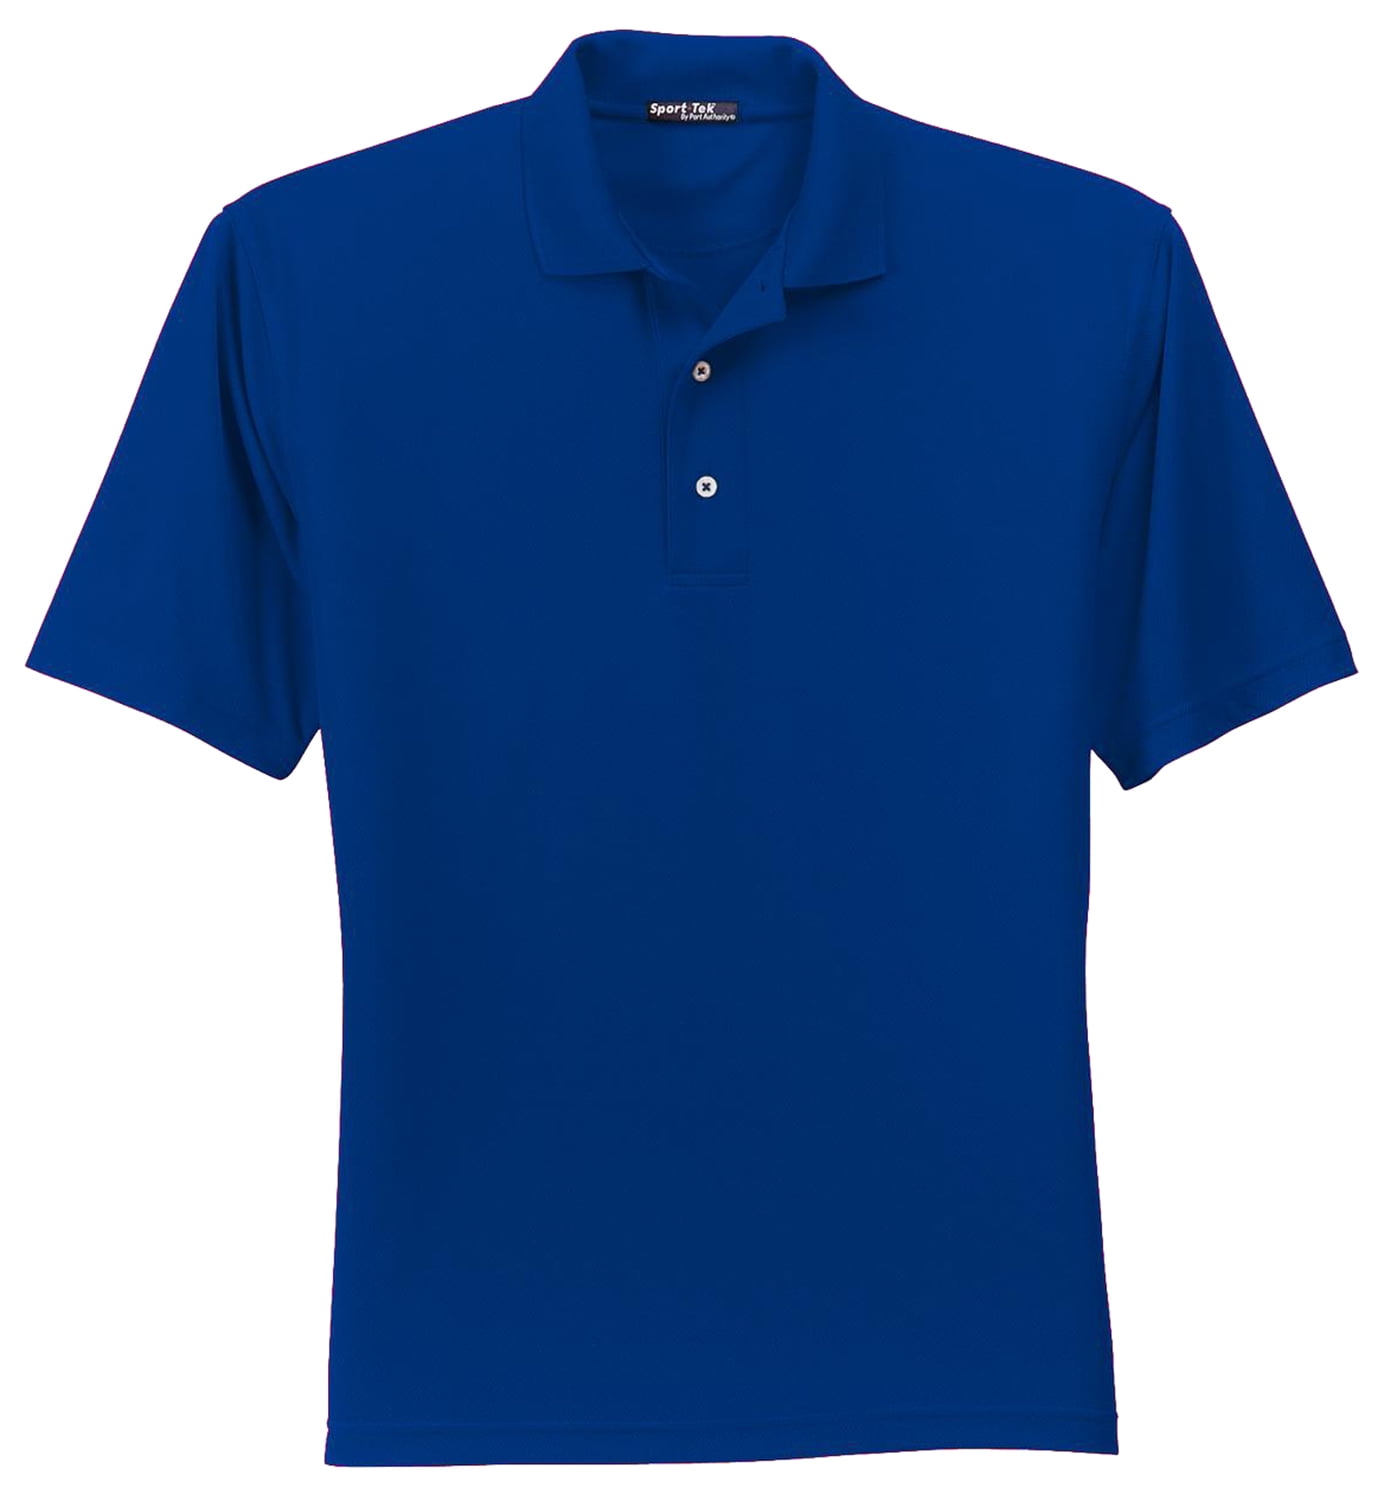 Sport-tek Men's Big And Tall 3-Button Placket Polo Shirt - Walmart.com